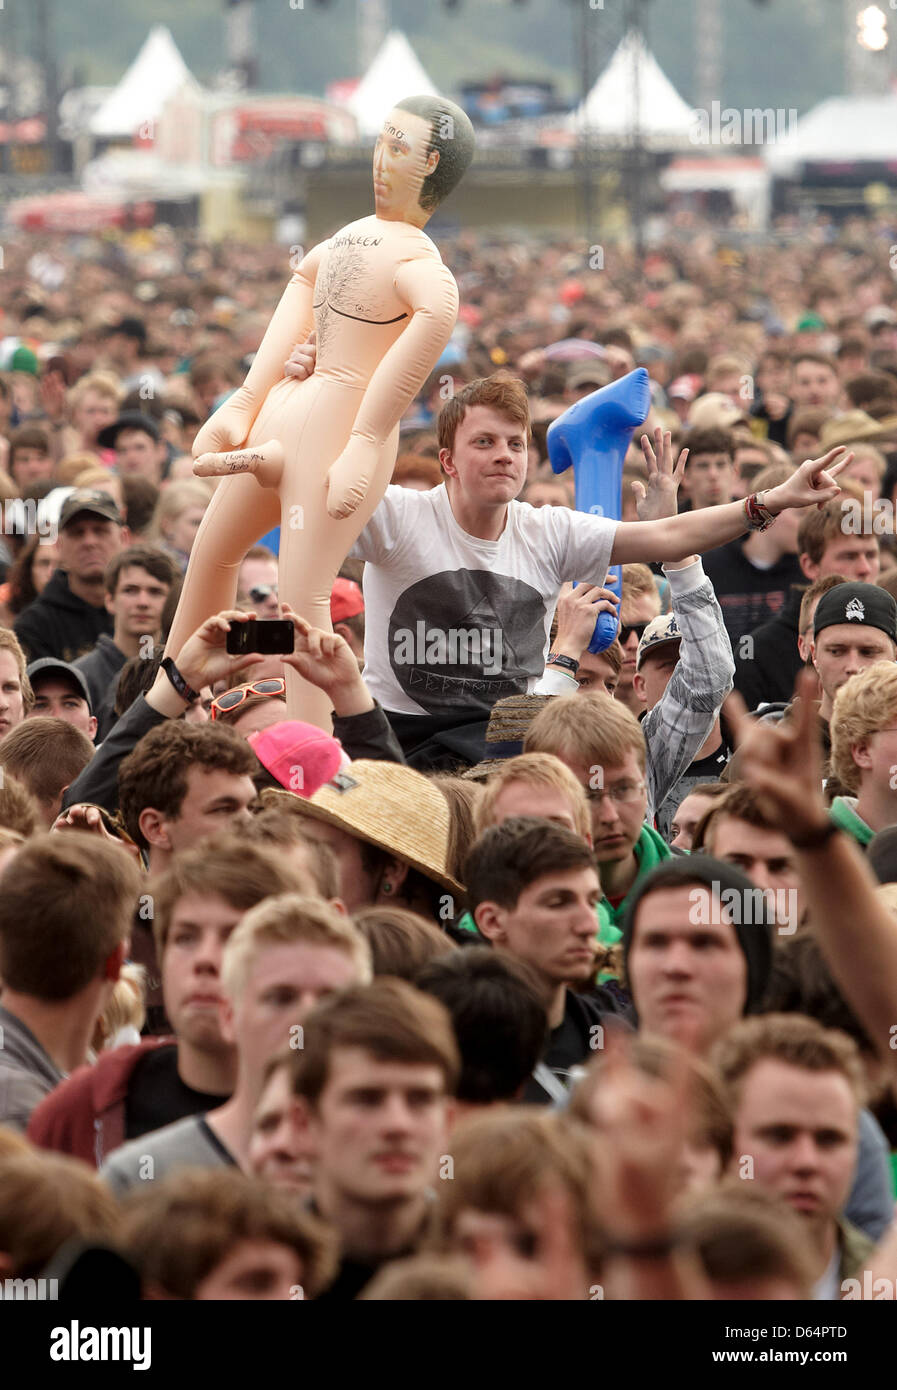 Rock fans cheer lors d'un concert au Rock am Ring Festival de musique près de Nuerburg, Allemagne, 01 juin 2012. Autour de 85 000 personnes sont attendues pour le festival de trois jours avec quelques bandes de 85 l'exécution. Photo : THOMAS FREY Banque D'Images